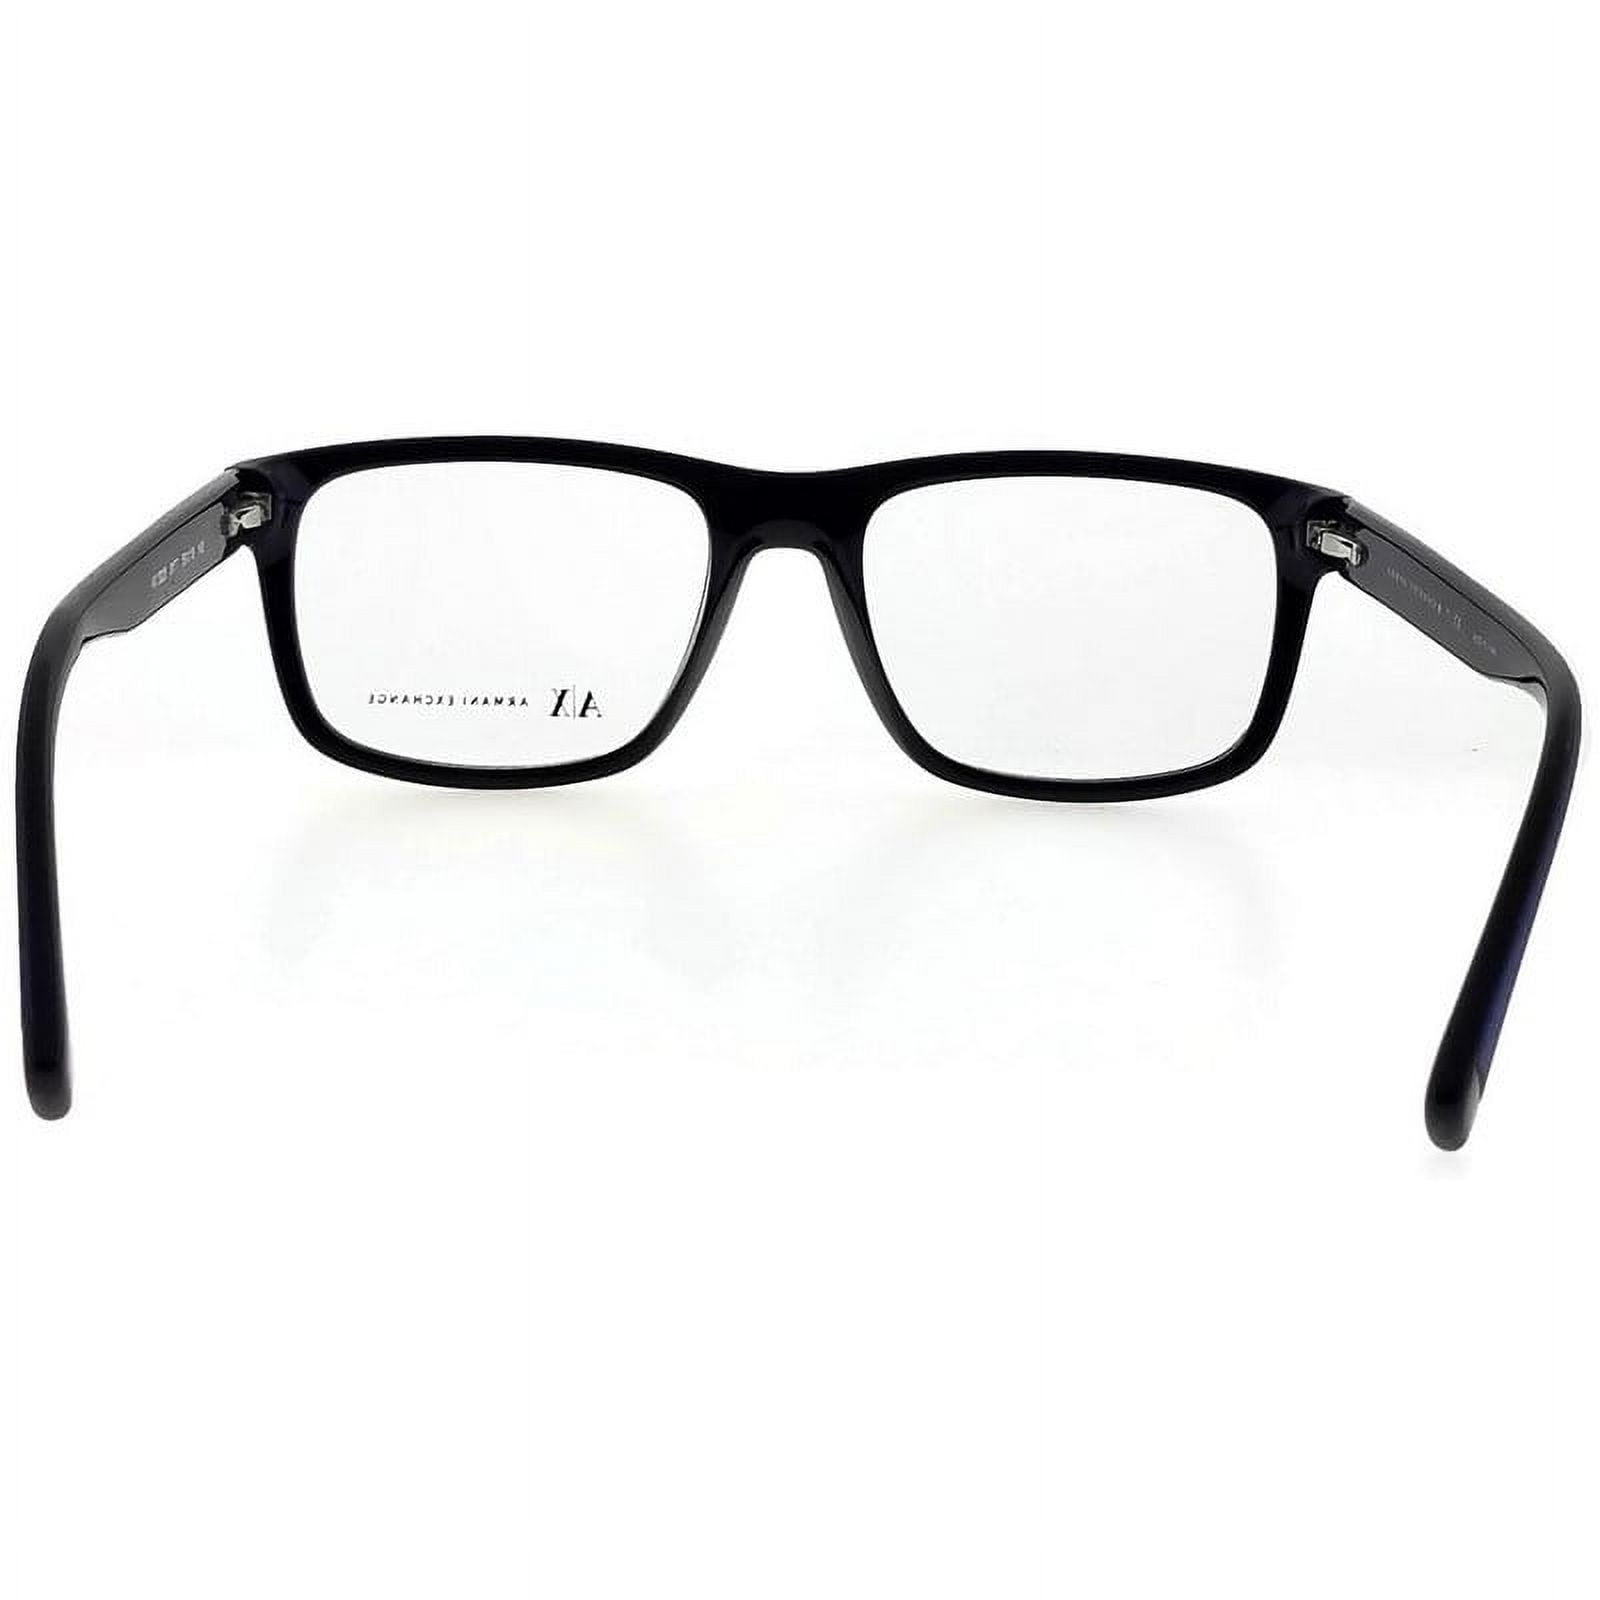 8178 Eyeglasses EXCHANGE 53MM AX 3025 ARMANI Black